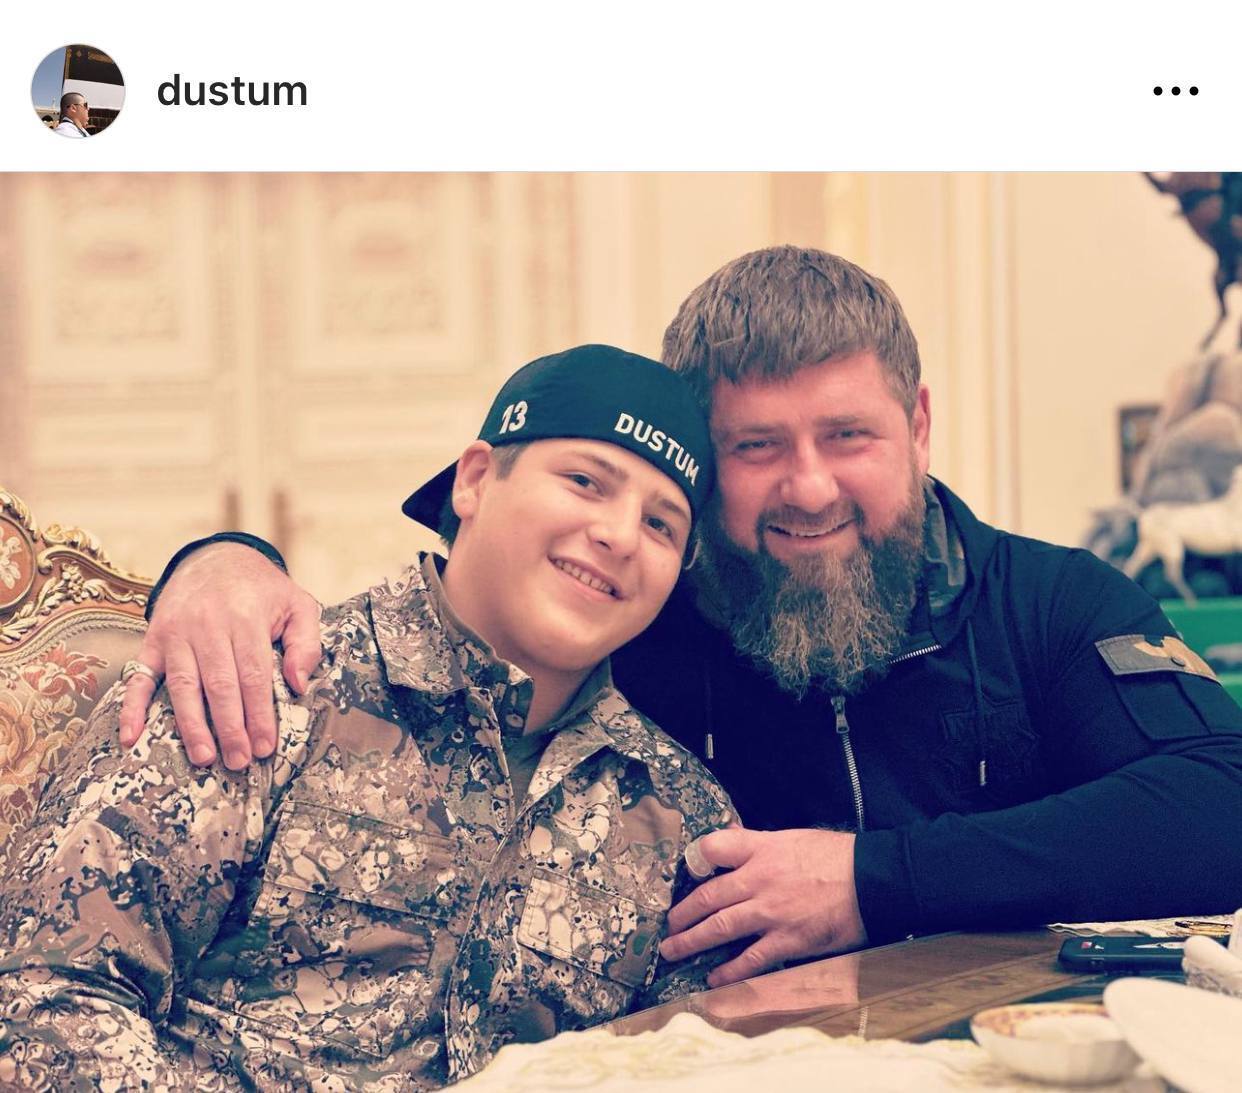 Кадиров помирає? Глава Чечні спростував чутки, але зробив дивну заяву про "коротке життя". Фото і відео